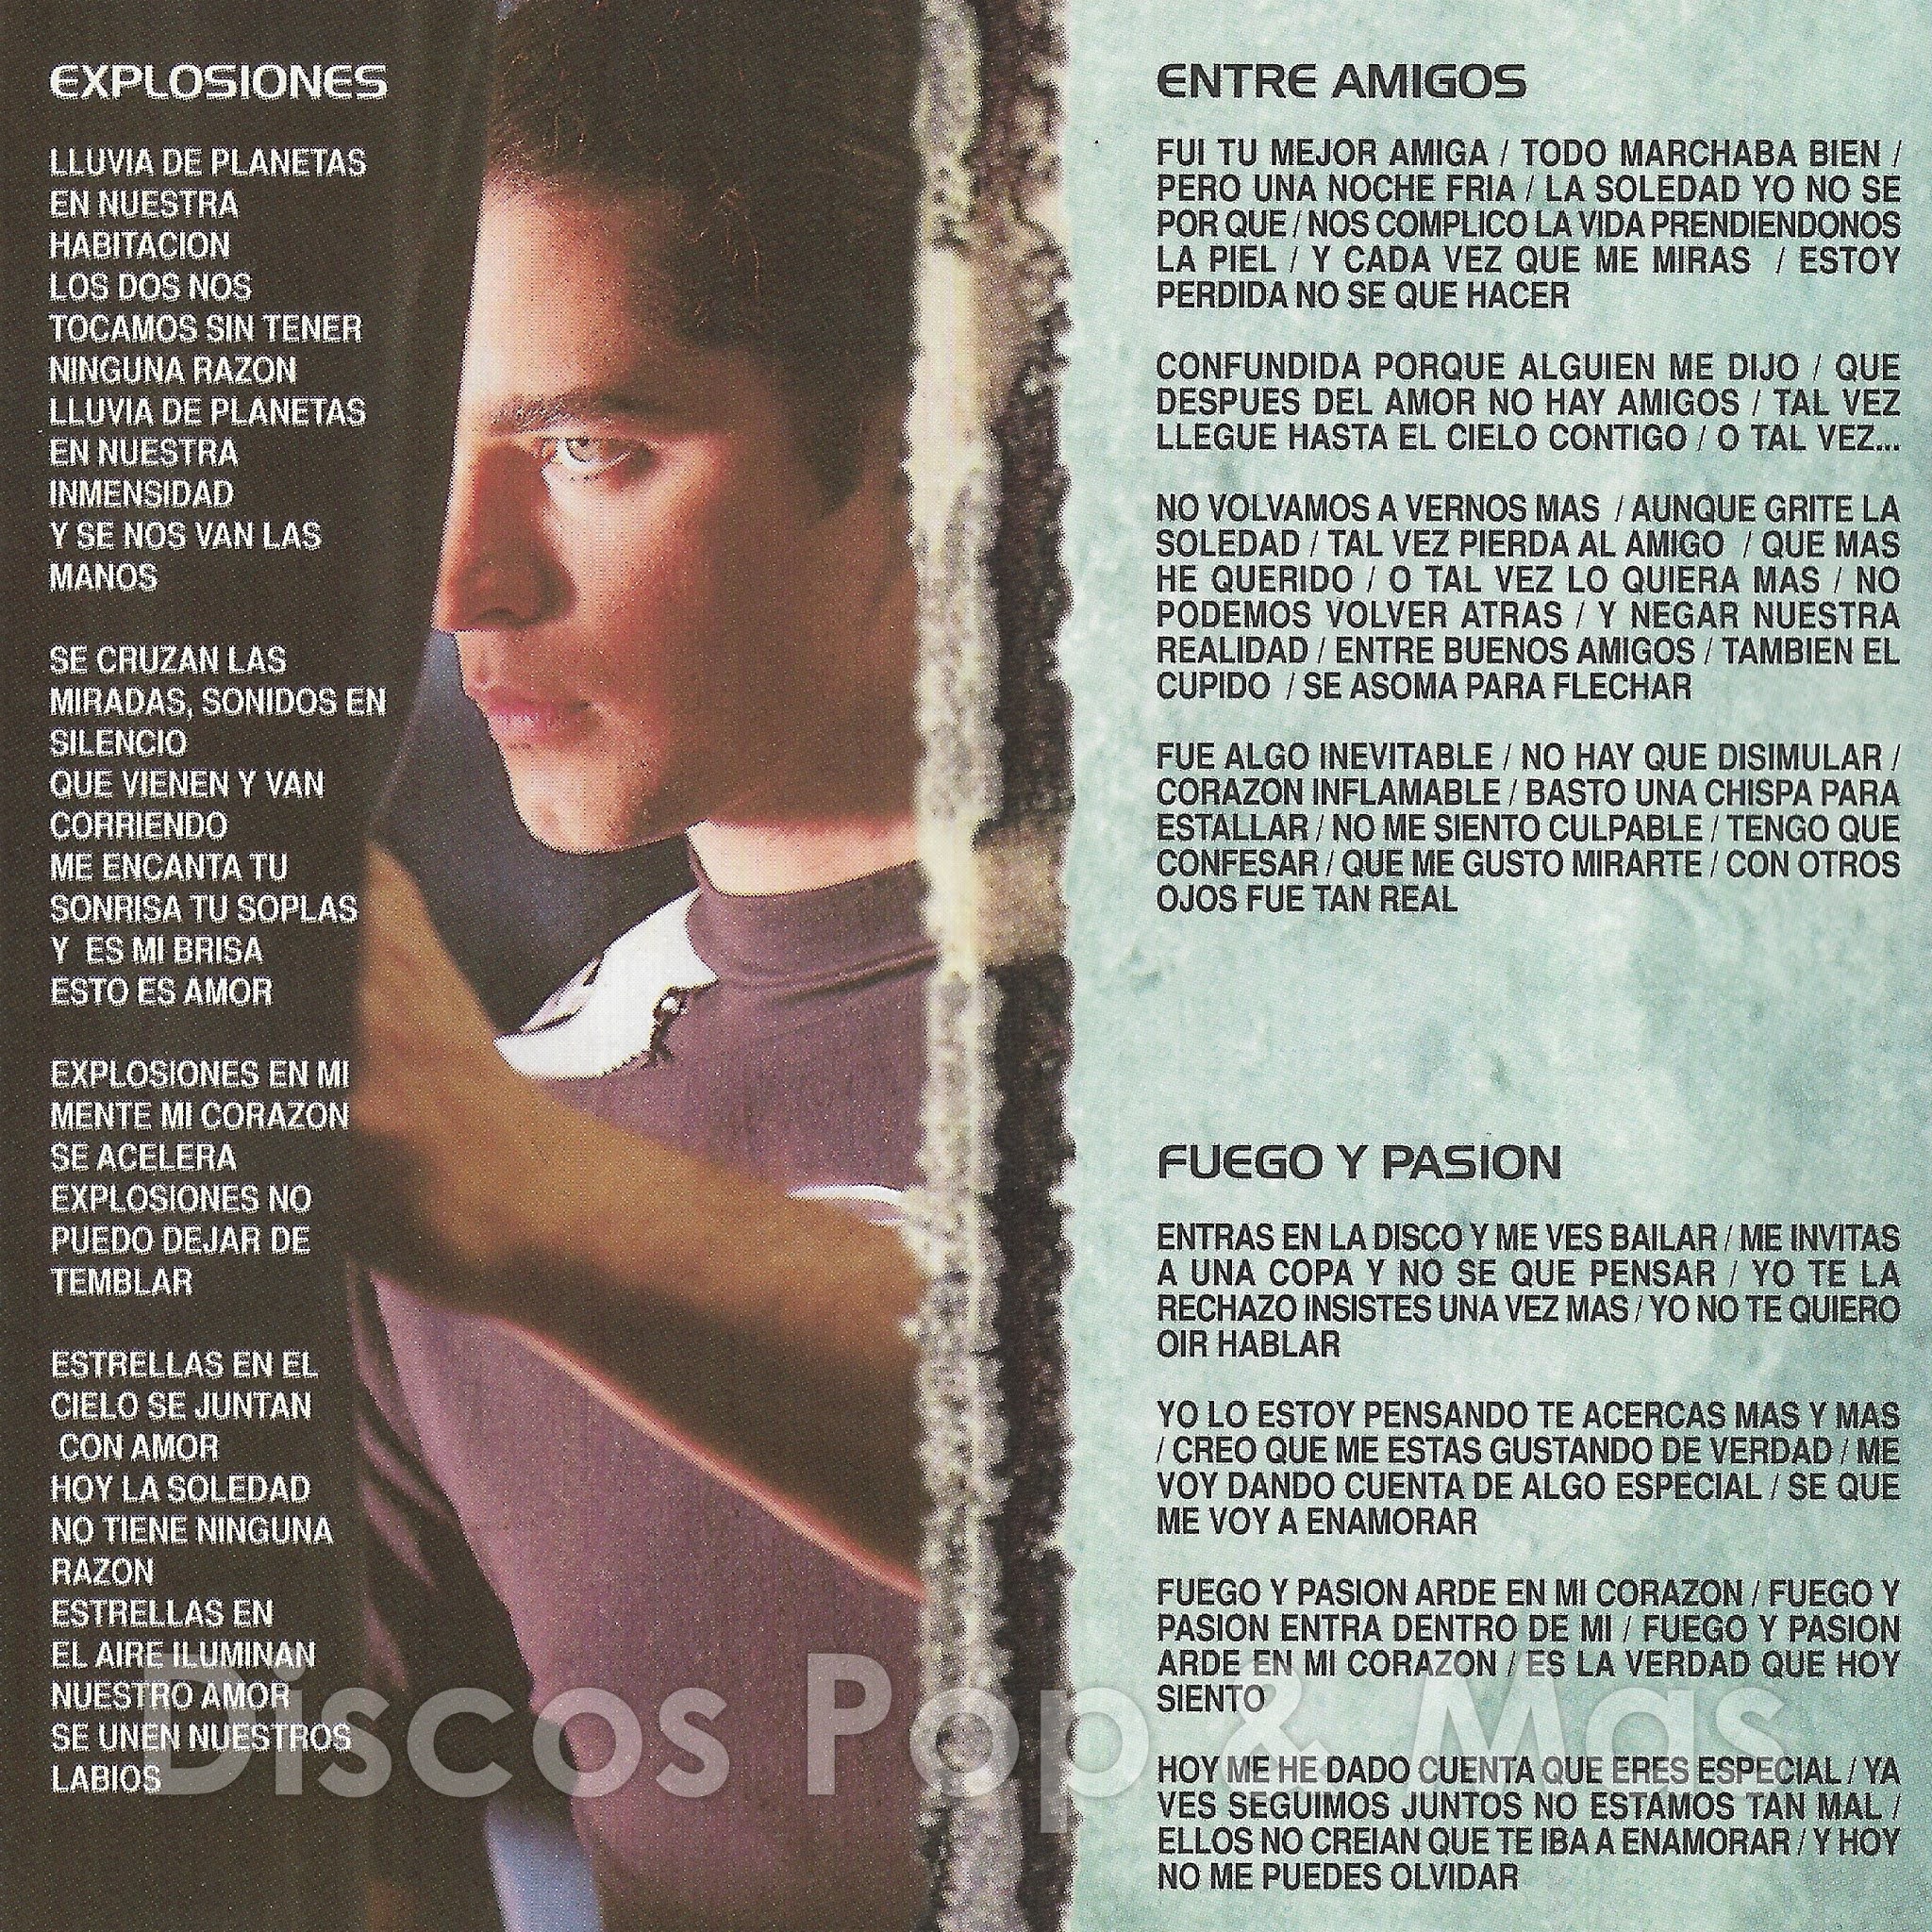 Sentidos Opuestos – Movimiento Perpetuo (2000, Jewel Case, CD) - Discogs